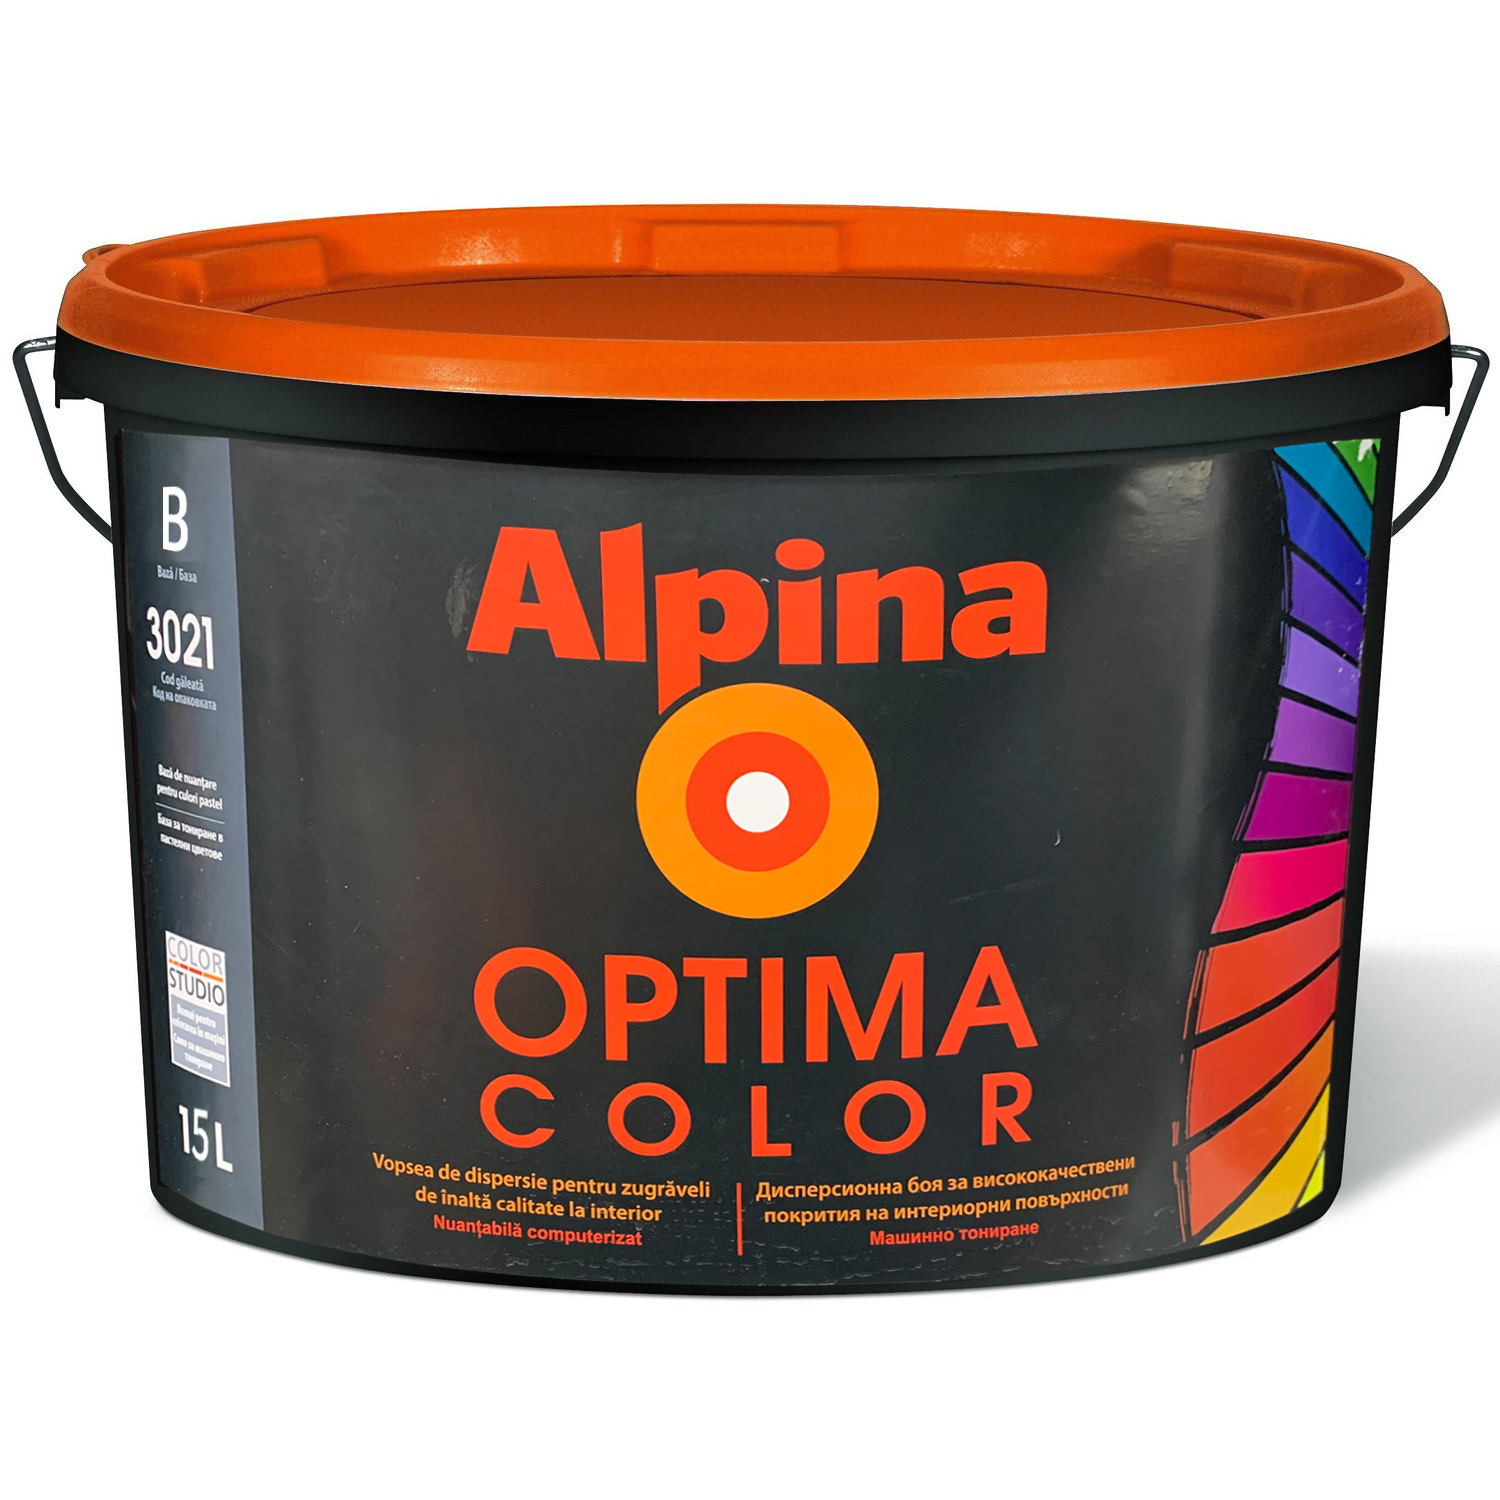 Водоэмульсии Optima Color Baza B 15l alpina РУМЫНИЯ